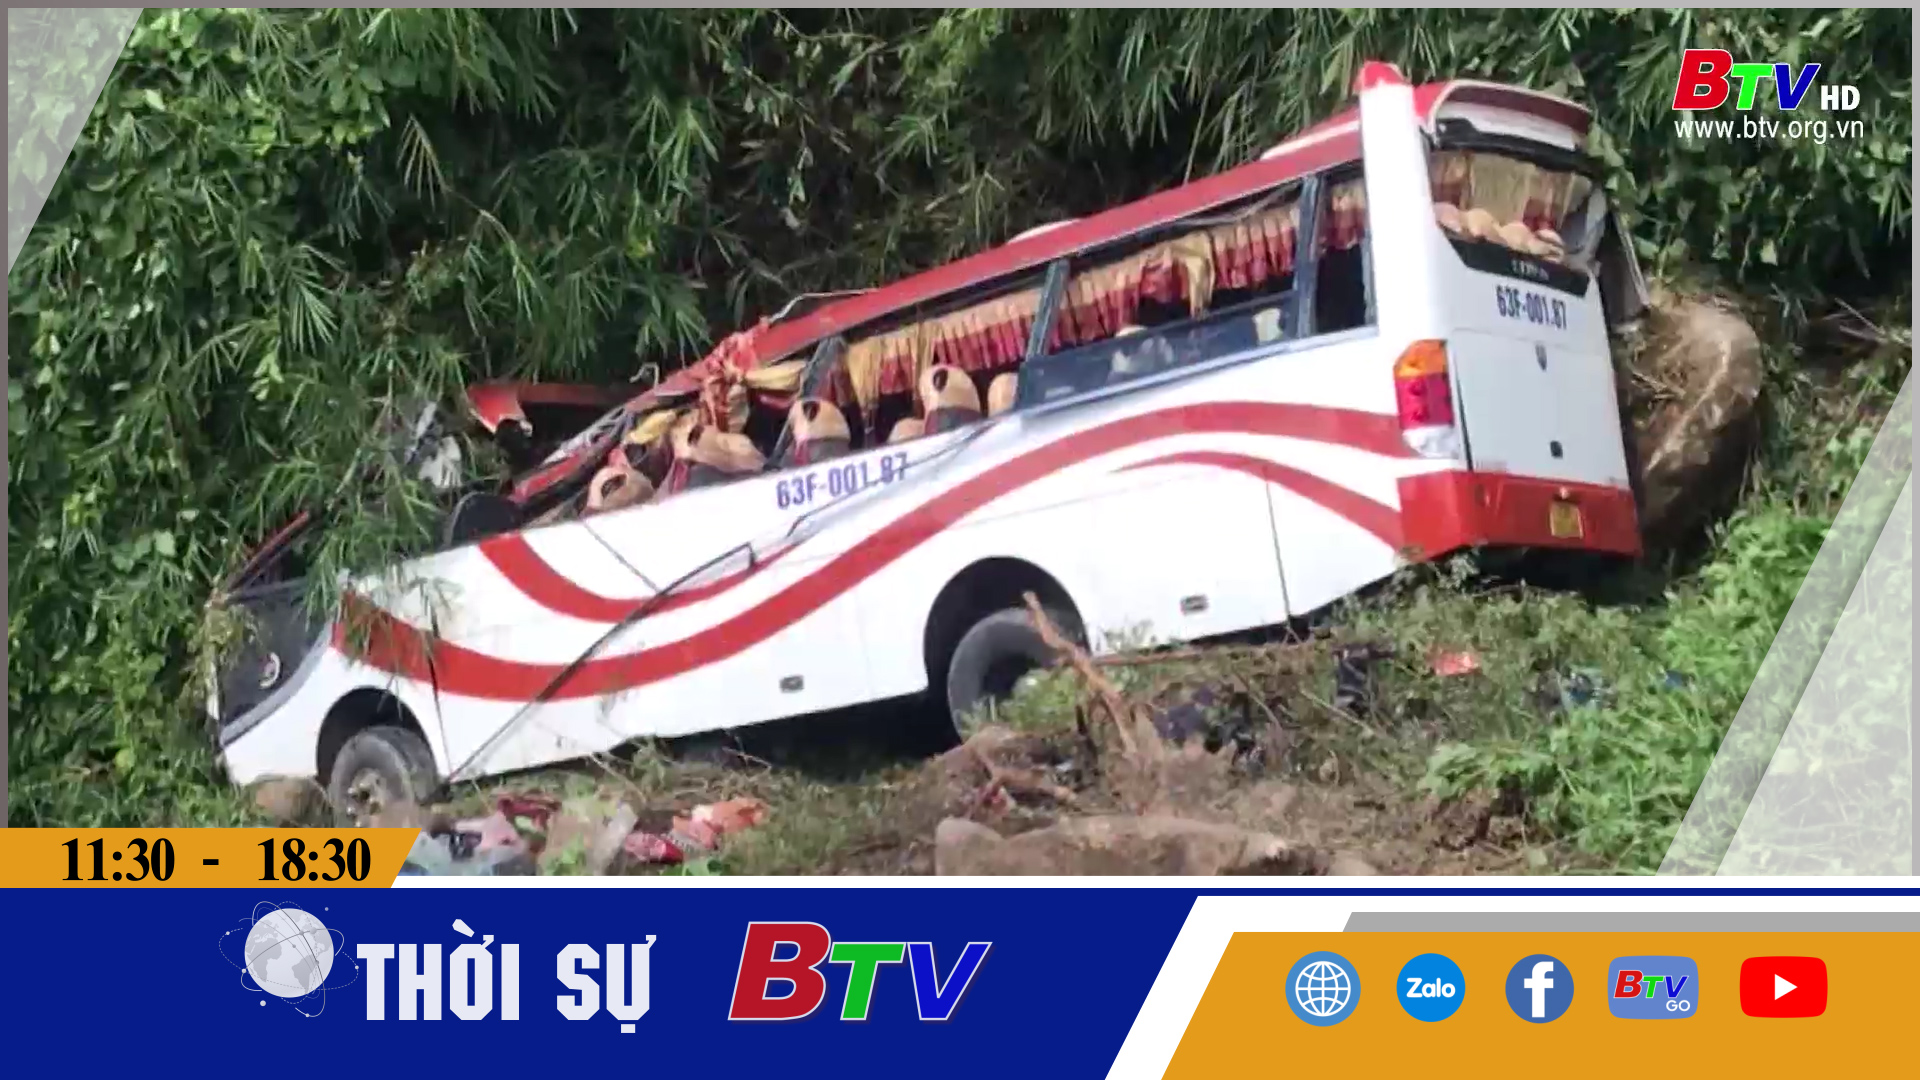 Tai nạn xe khách lao xuống vực tại Bình Thuận 